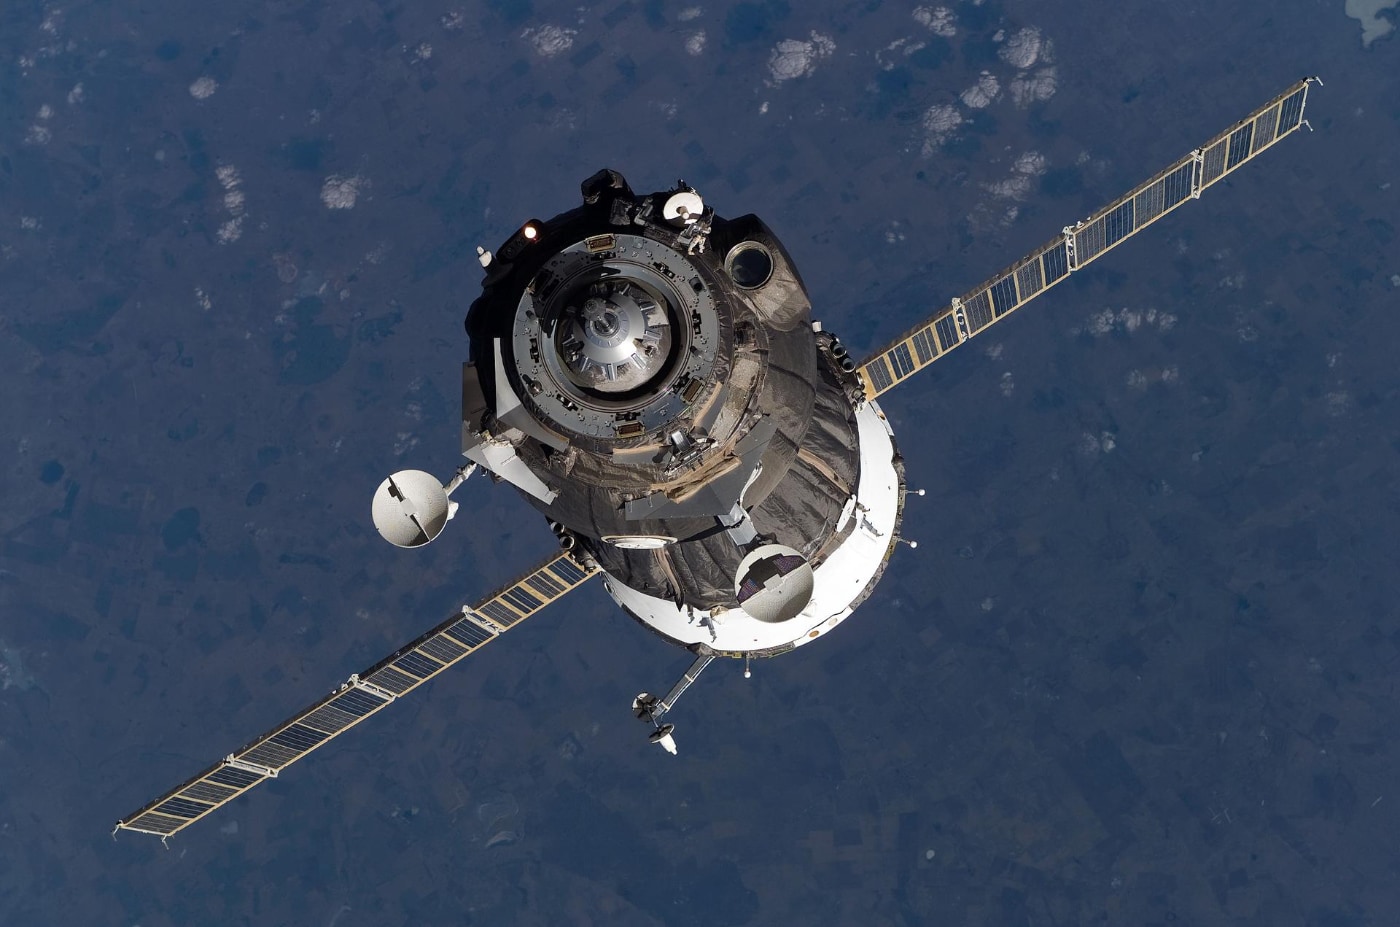 La nave espacial Soyuz TMA-12 se aproxima a la Estación Espacial Internacional, con Sergei Volkov, Oleg Kononenko y So-yeon Yi. Foto: NASA.